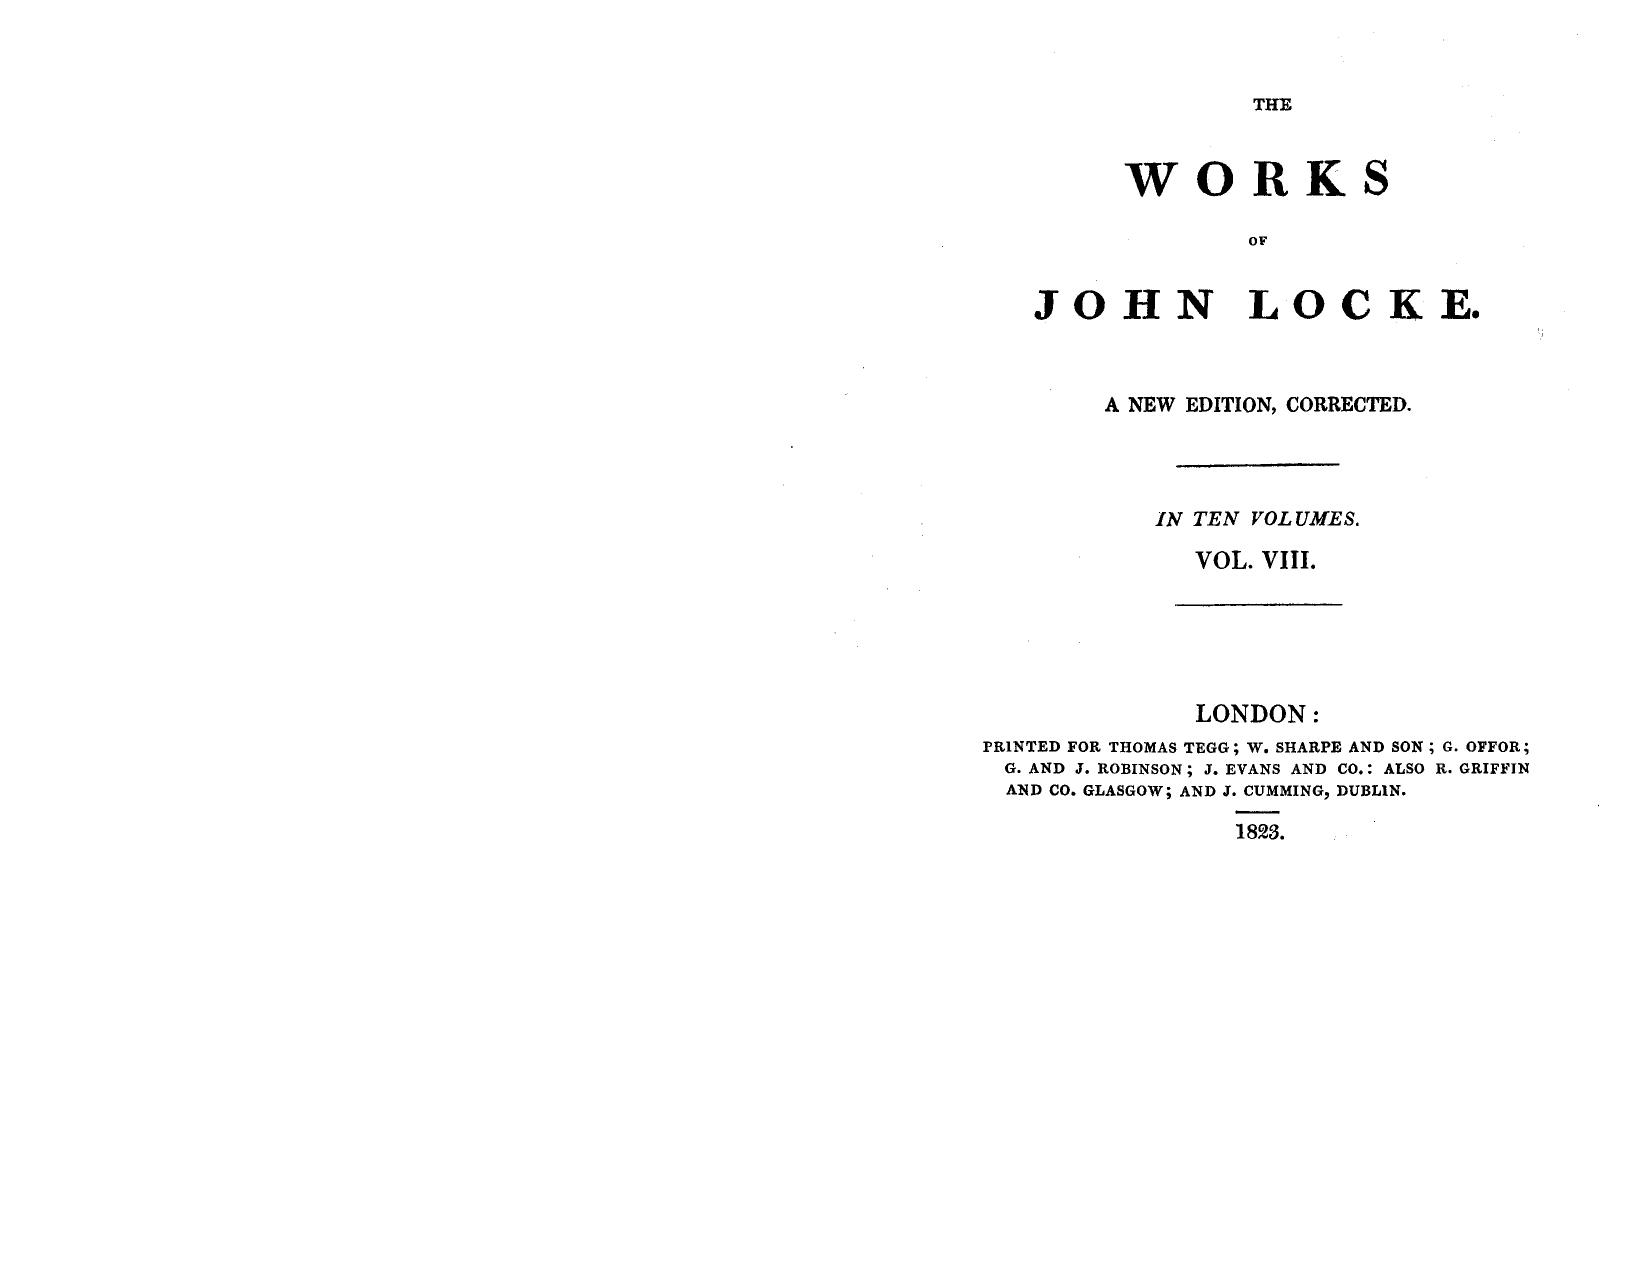 The works of John Locke 08 by John Locke